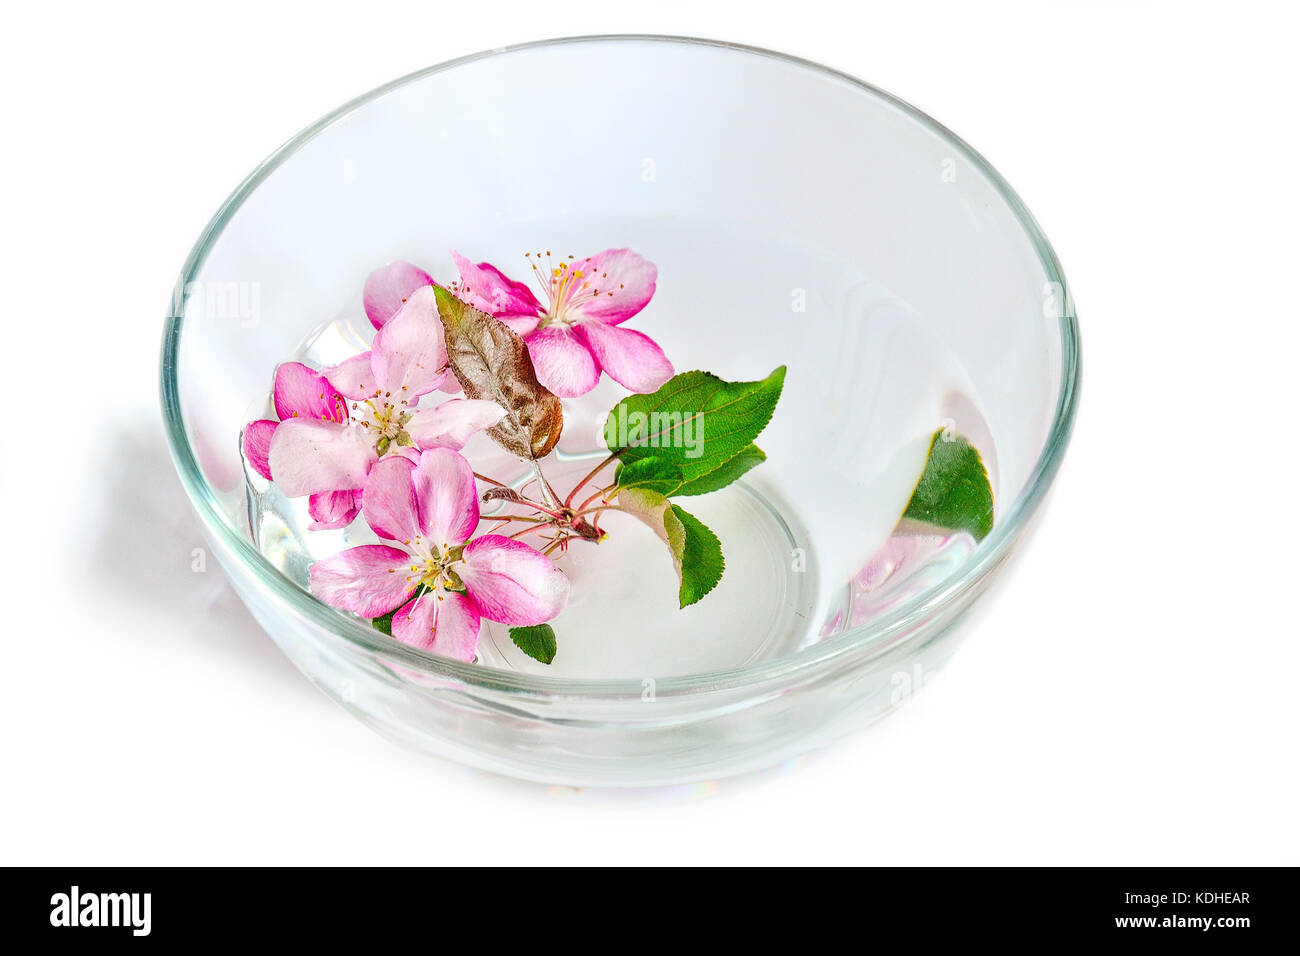 Fresh pink ou pommier fleurs flottant dans le bol en verre avec de l'eau. traitement spa, l'aromathérapie et soins concept Banque D'Images